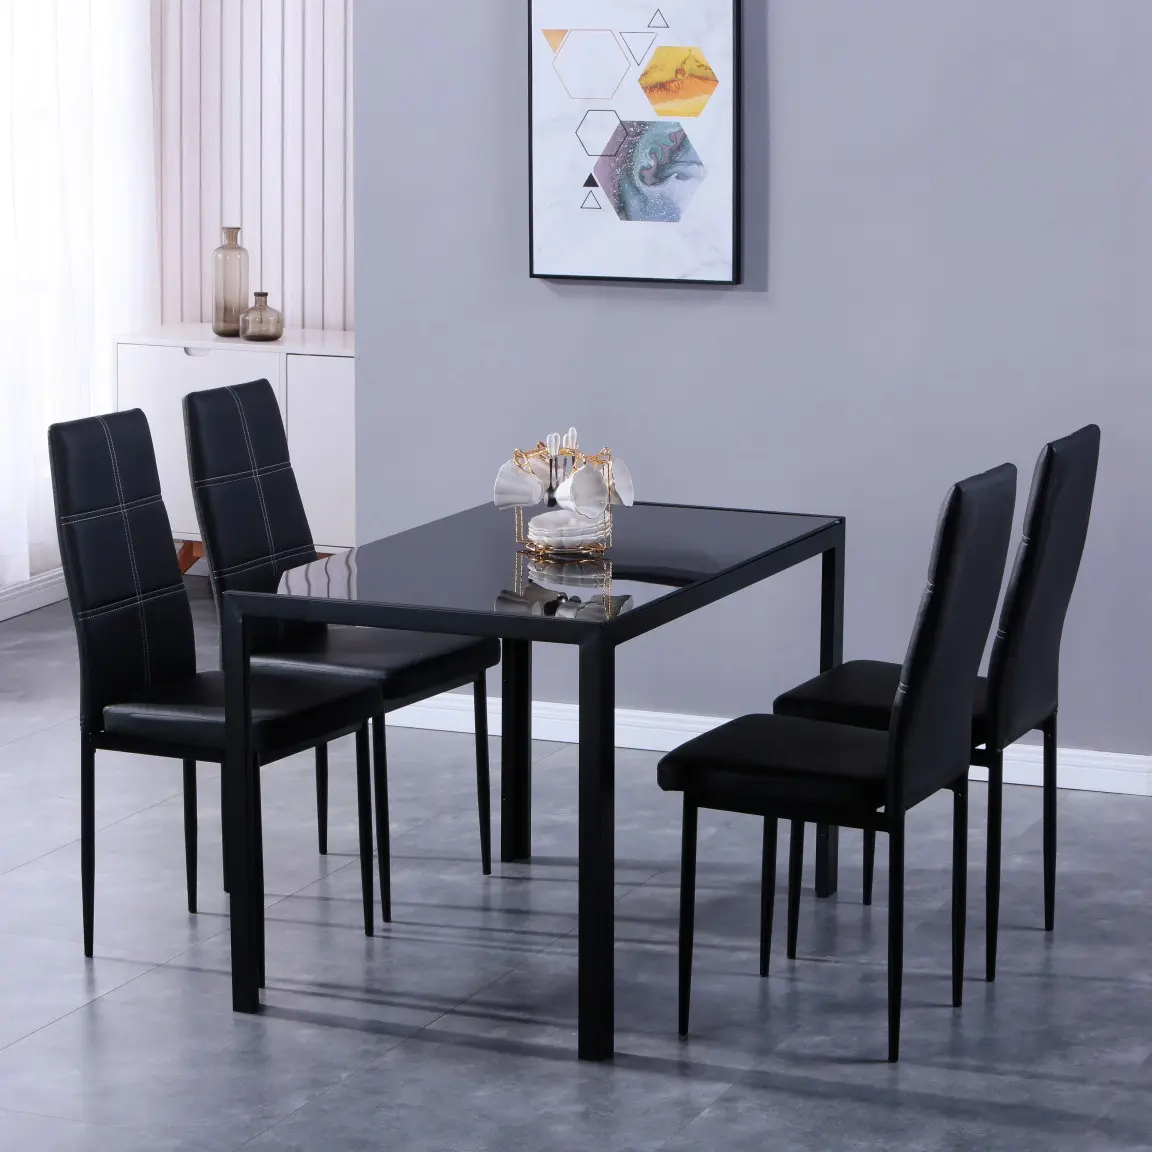 Table d'extérieur suspendue blanc de qualité supérieure, ensemble de table à manger moderne, avec pieds en fer